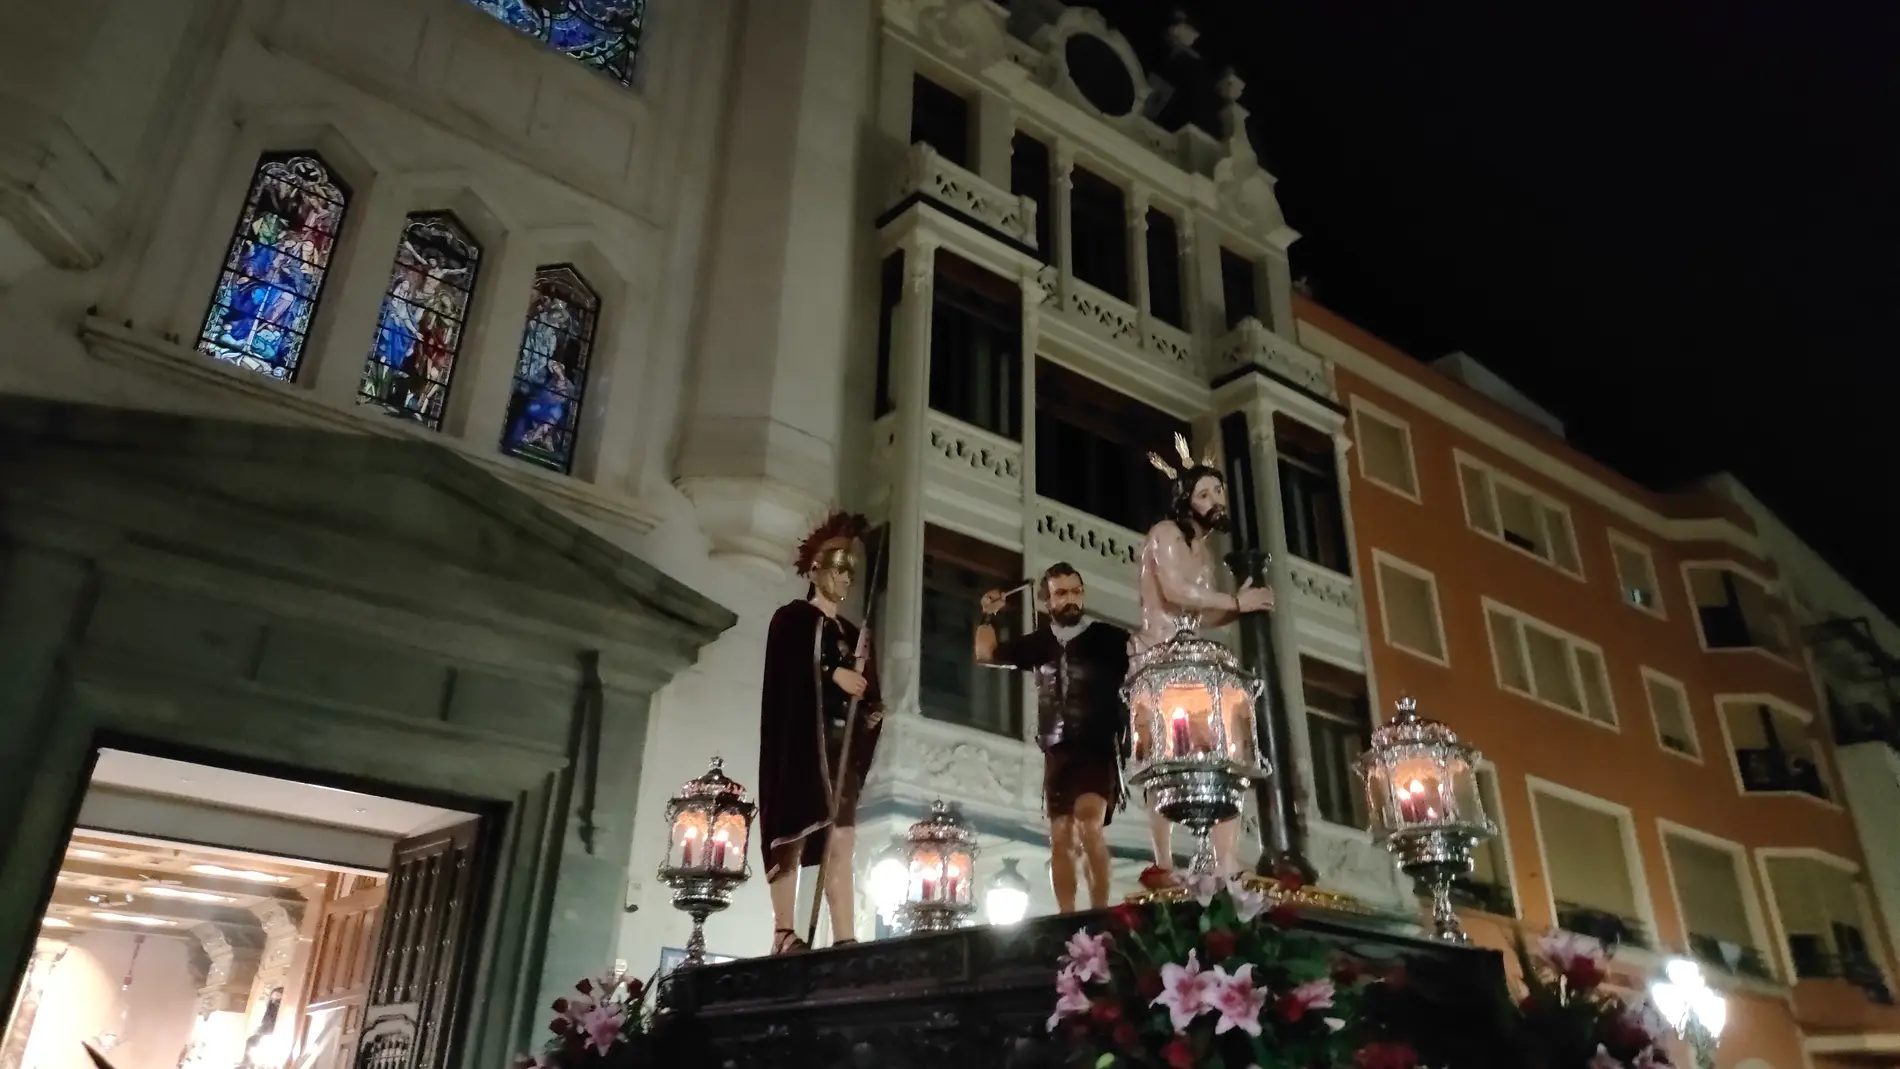 La ocupación hotelera en la ciudad de Badajoz supera el 90 por ciento durante Semana Santa